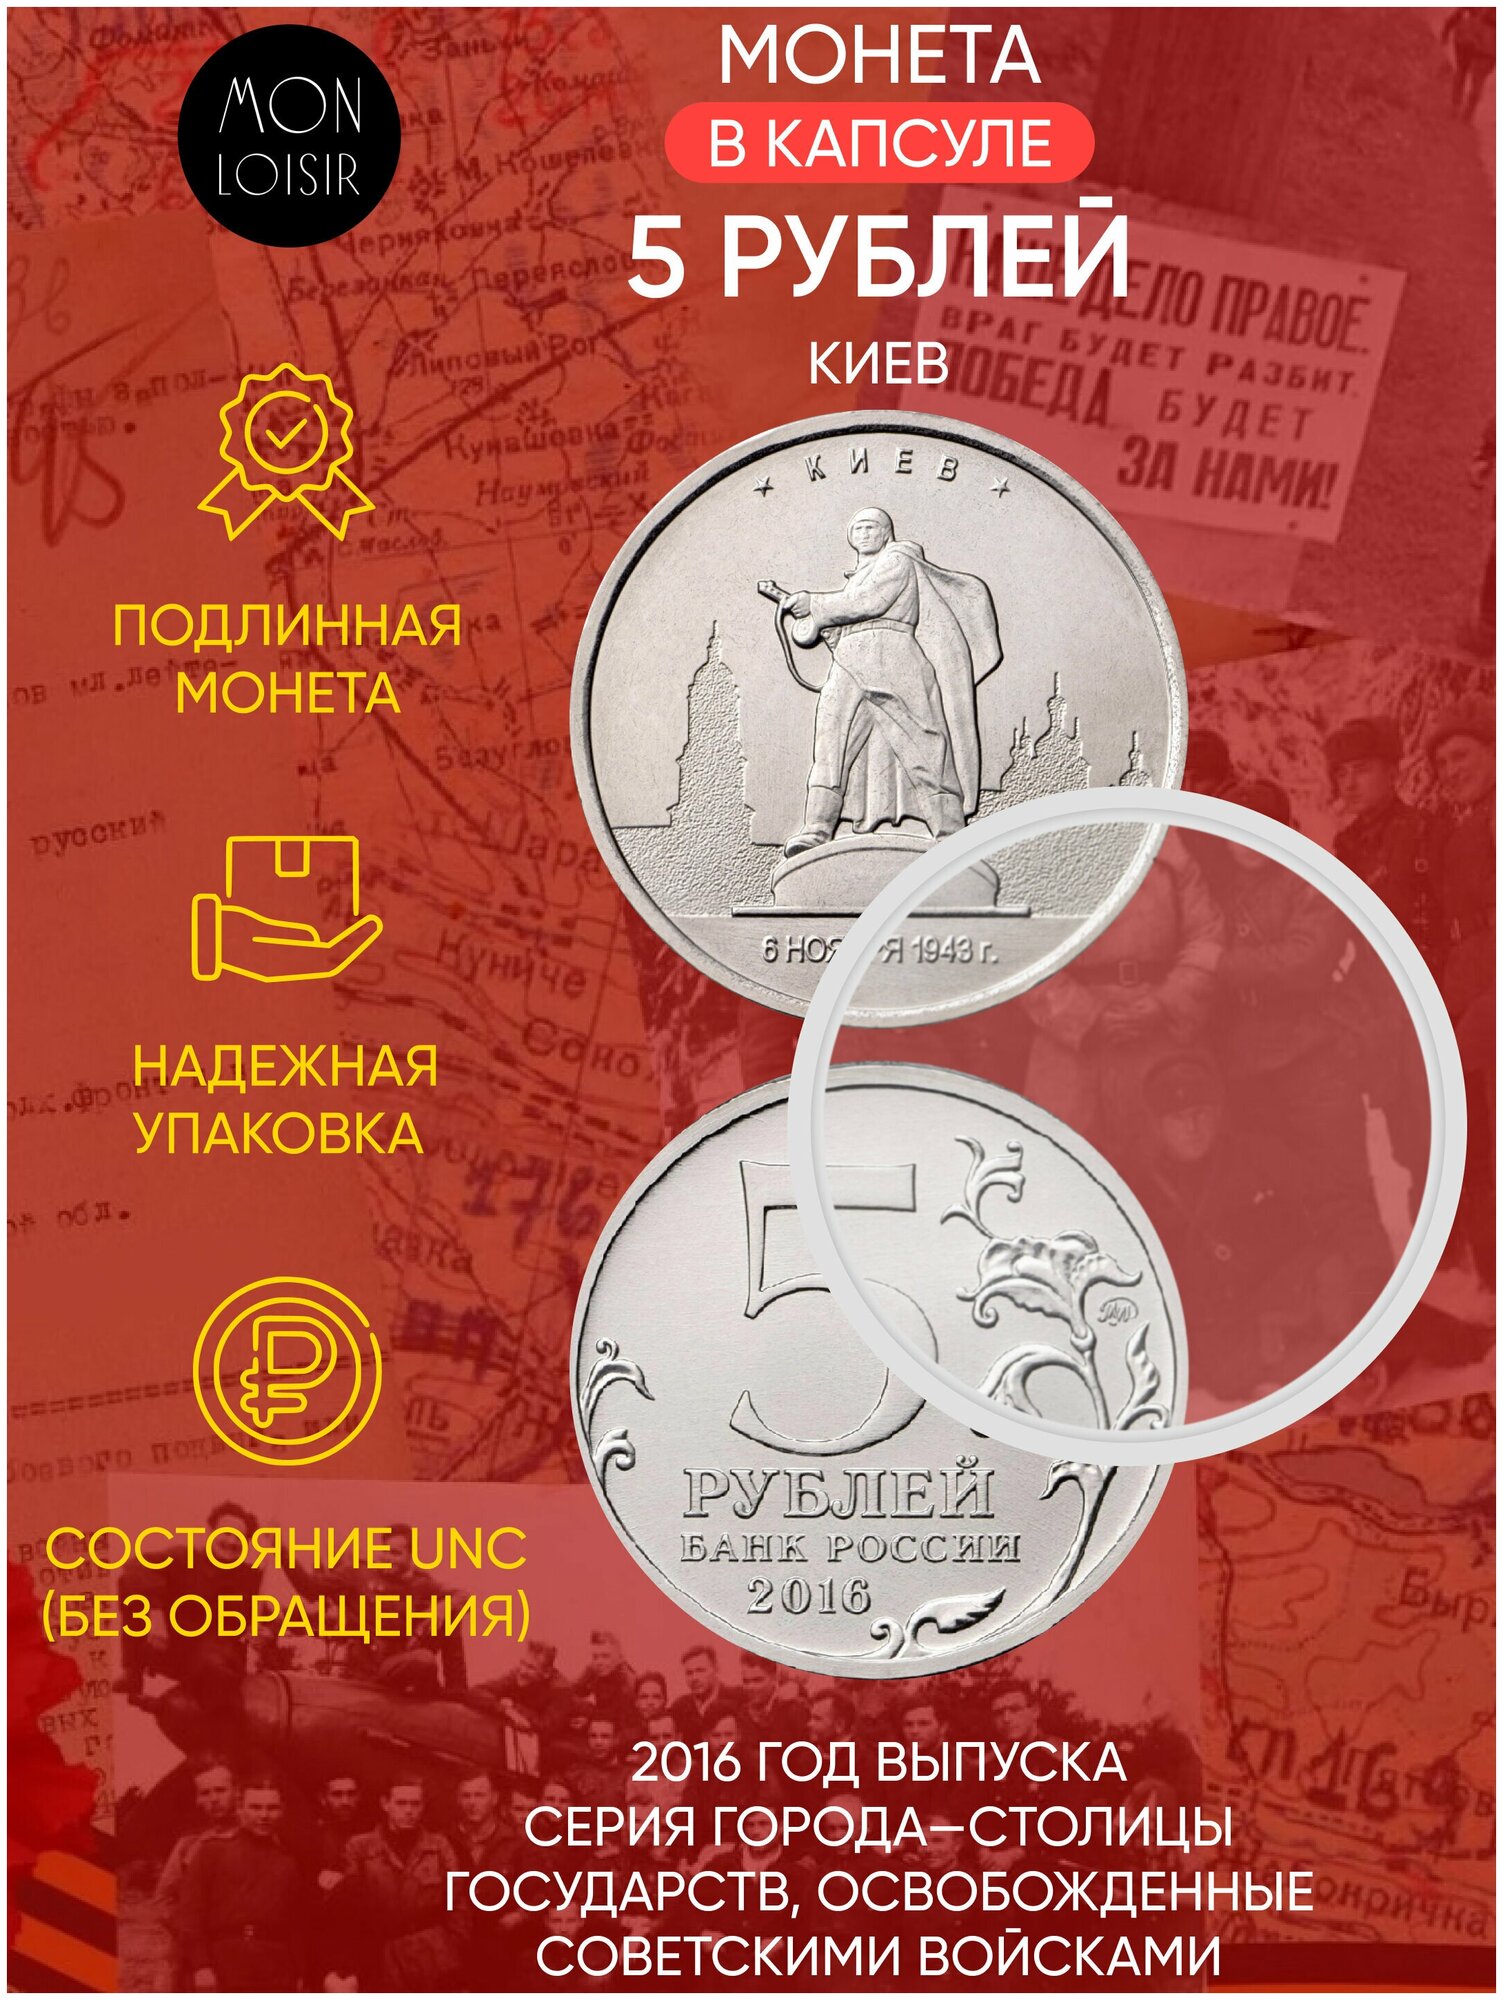 Памятная монета 5 рублей в капсуле Киев. Освобожденные города-столицы Европы. ММД, 2016 г. в. UNC